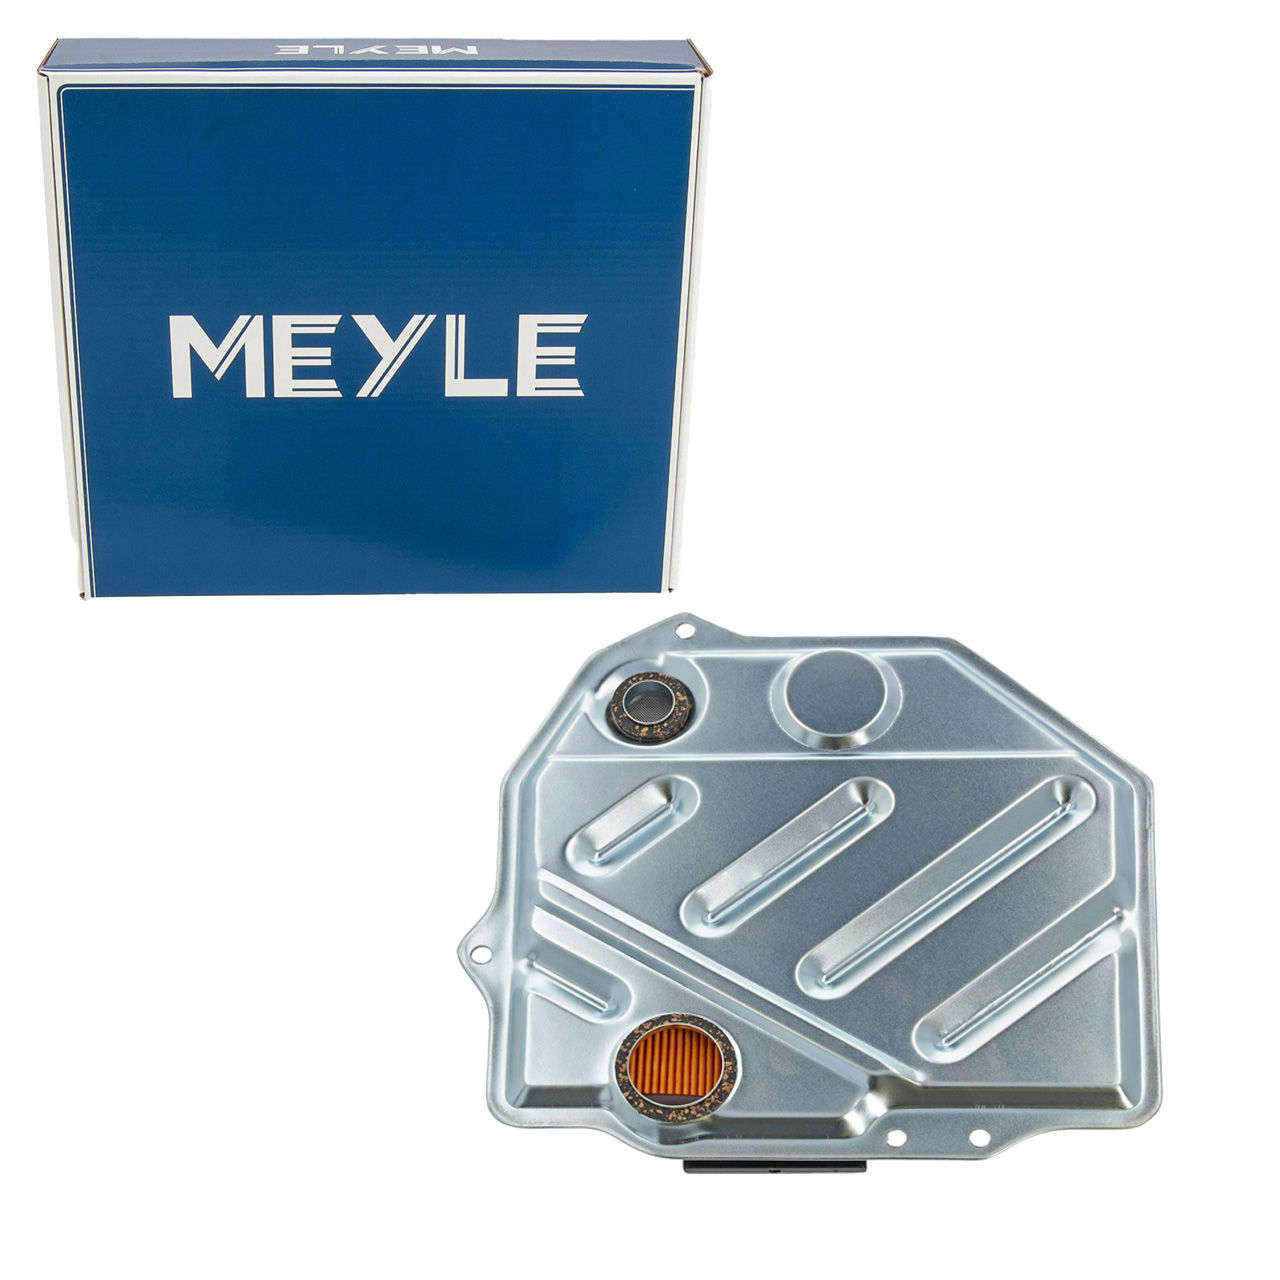 MEYLE Hydraulikfilter Getriebefilter MERCEDES-BENZ W124 W210 C124 S124 W126 W140 722.5